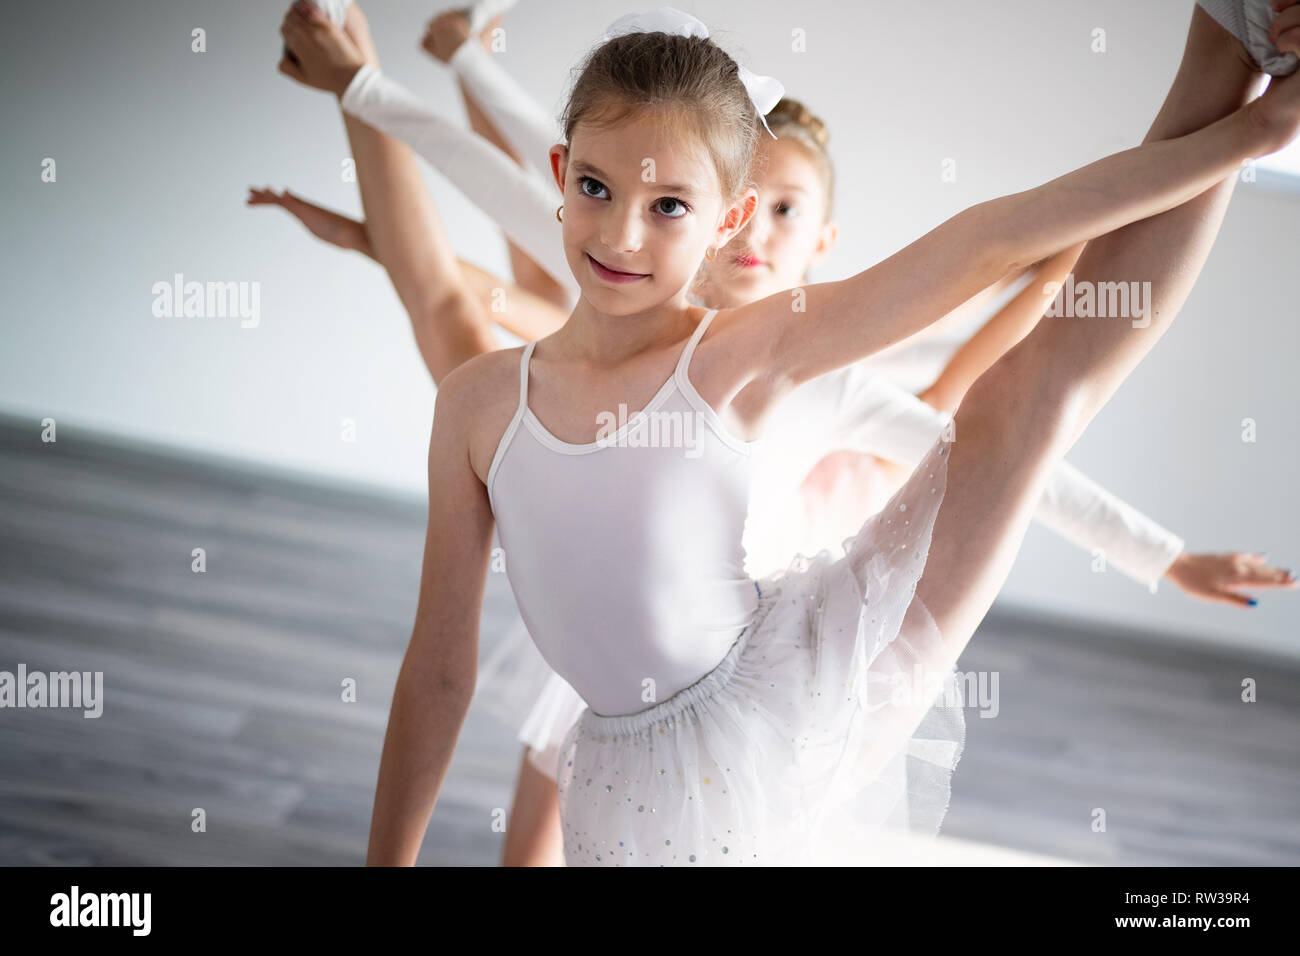 Gruppe von kleinen Ballerinas Mädchen tun, Übungen in der Tanzschule Stockfoto